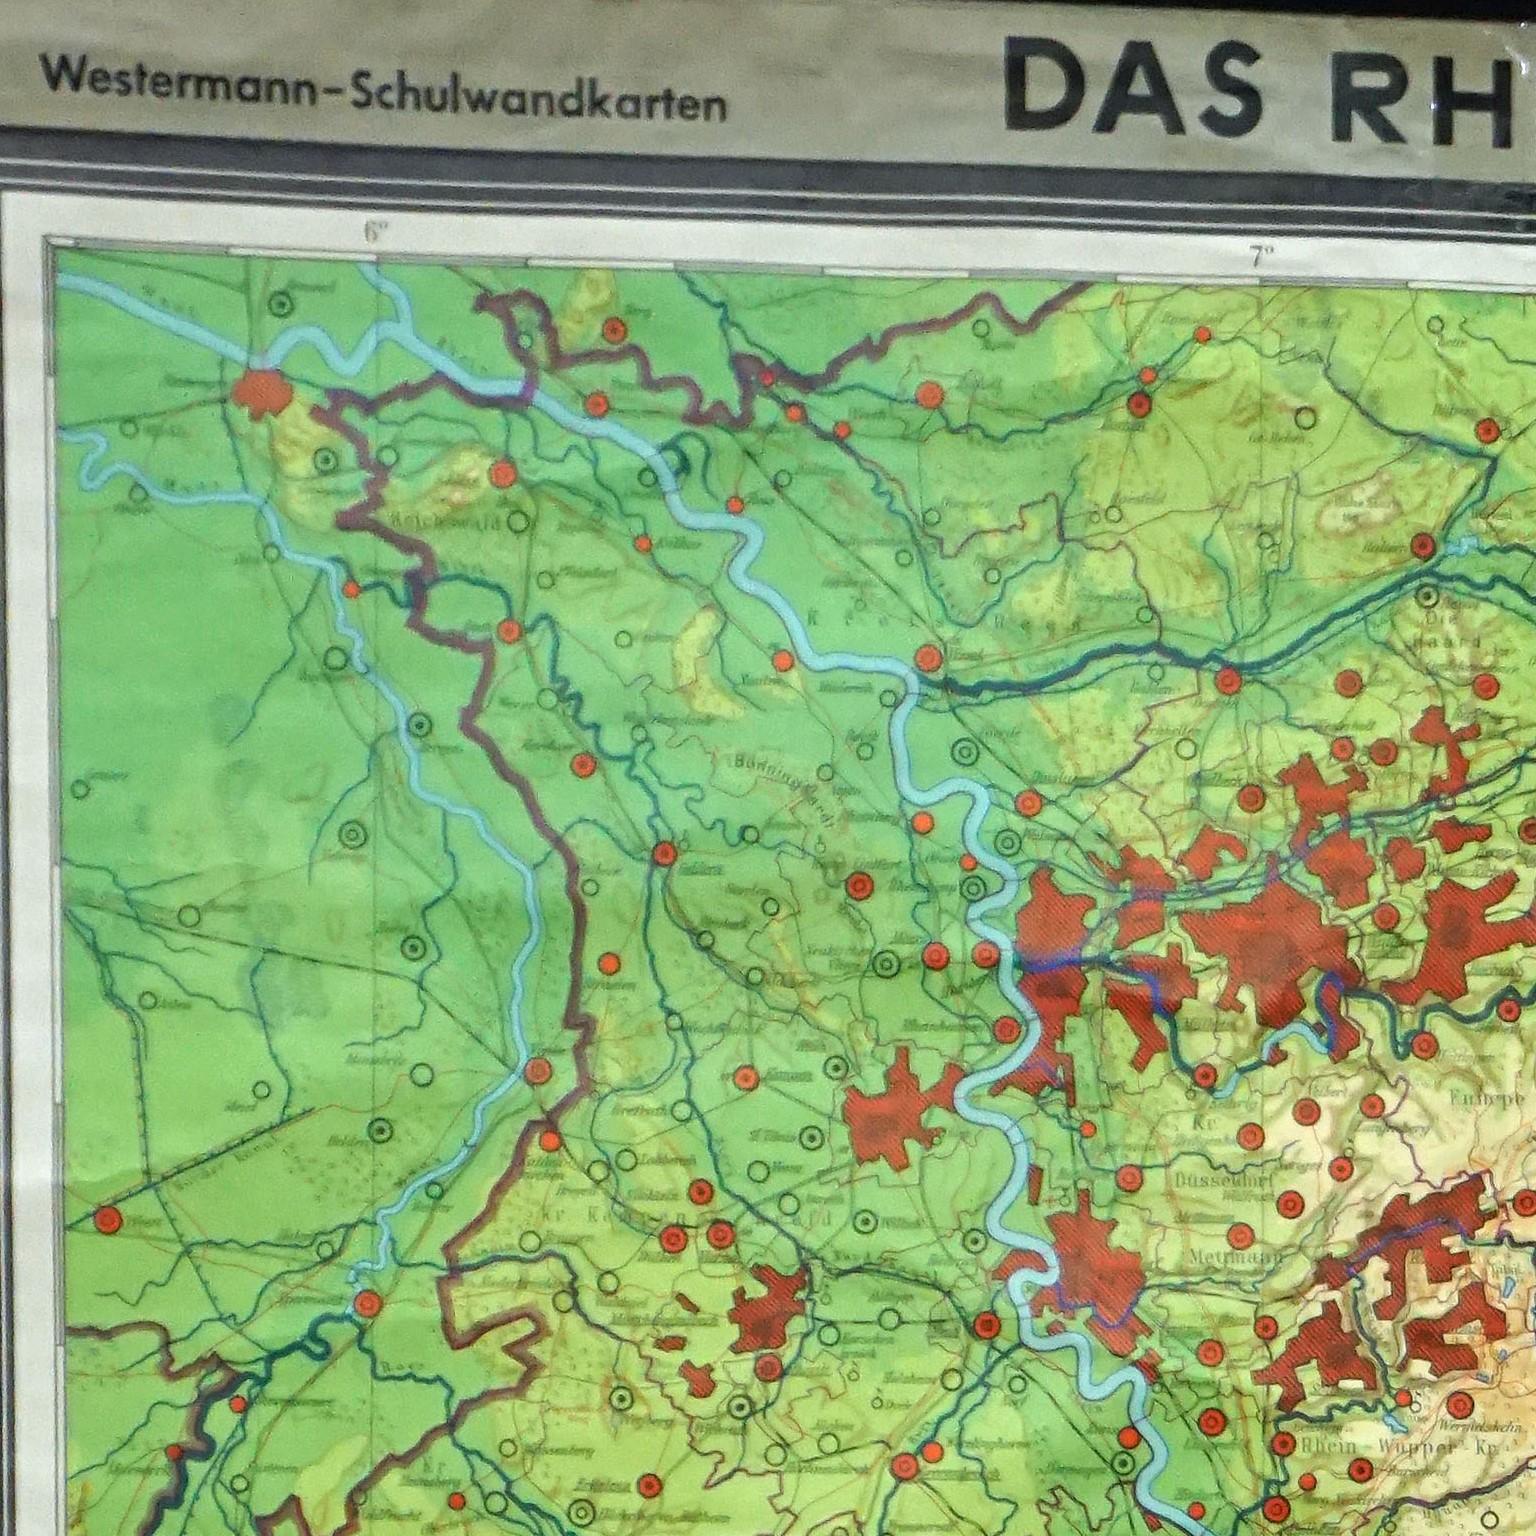 Ein Landkern Vintage Pull-Down-Karte zur Illustration der beliebten deutschen Region des Rheinlands, veröffentlicht von Westermann. Farbenfroher Druck auf mit Leinwand verstärktem Papier.
Abmessungen:
Breite 147 cm (57,87 Zoll)
Höhe 212,50 cm (83,66